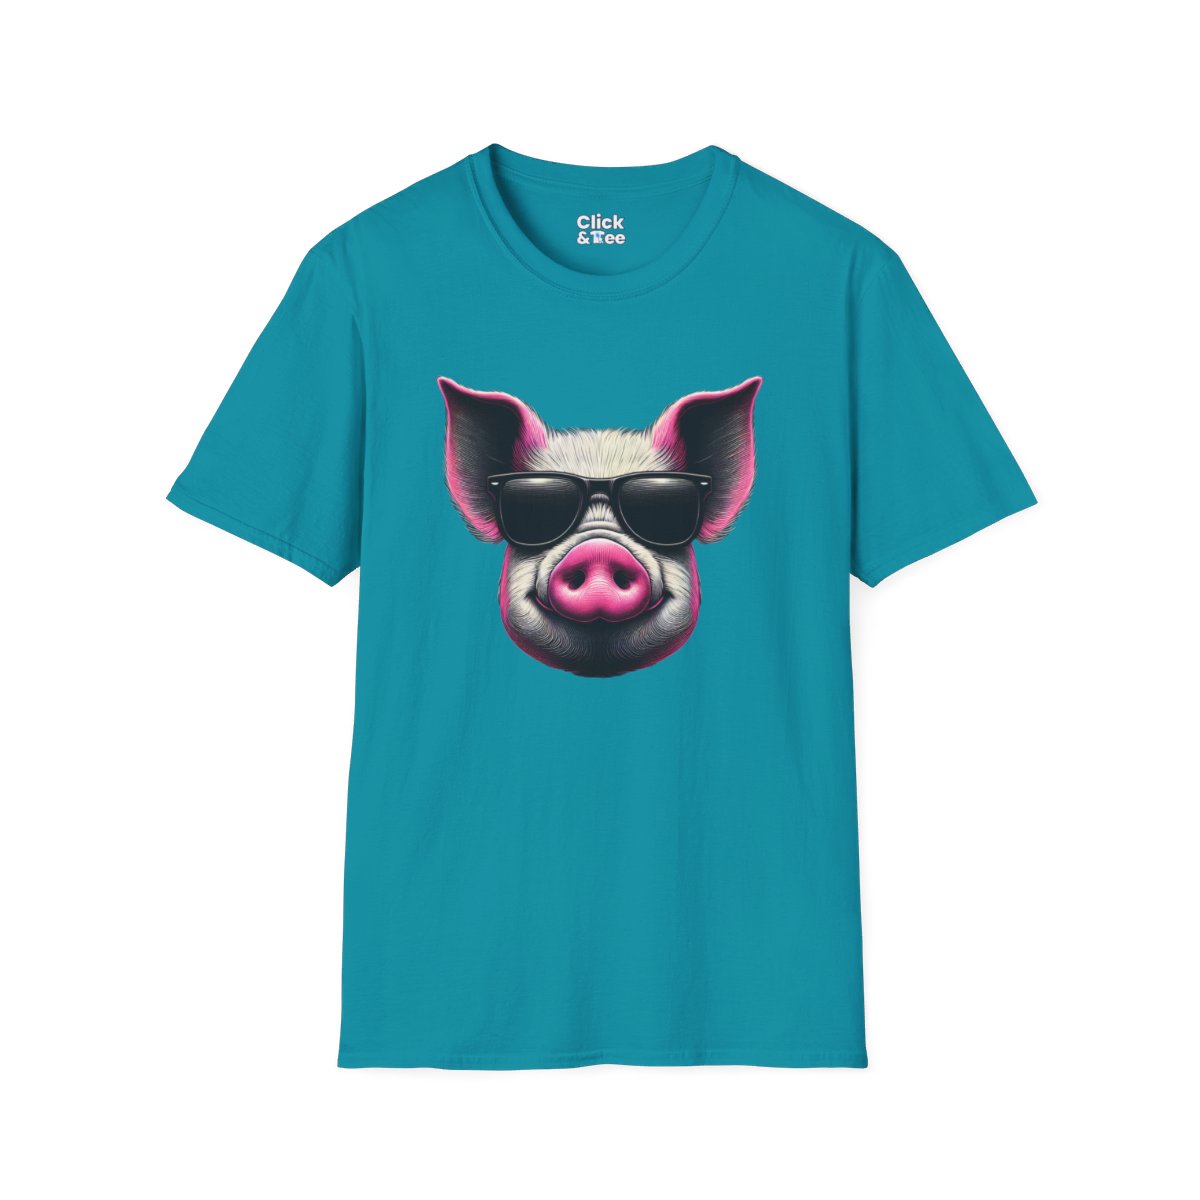 Graphic ArtPink Pig Face Unique T-Shirt Image 13